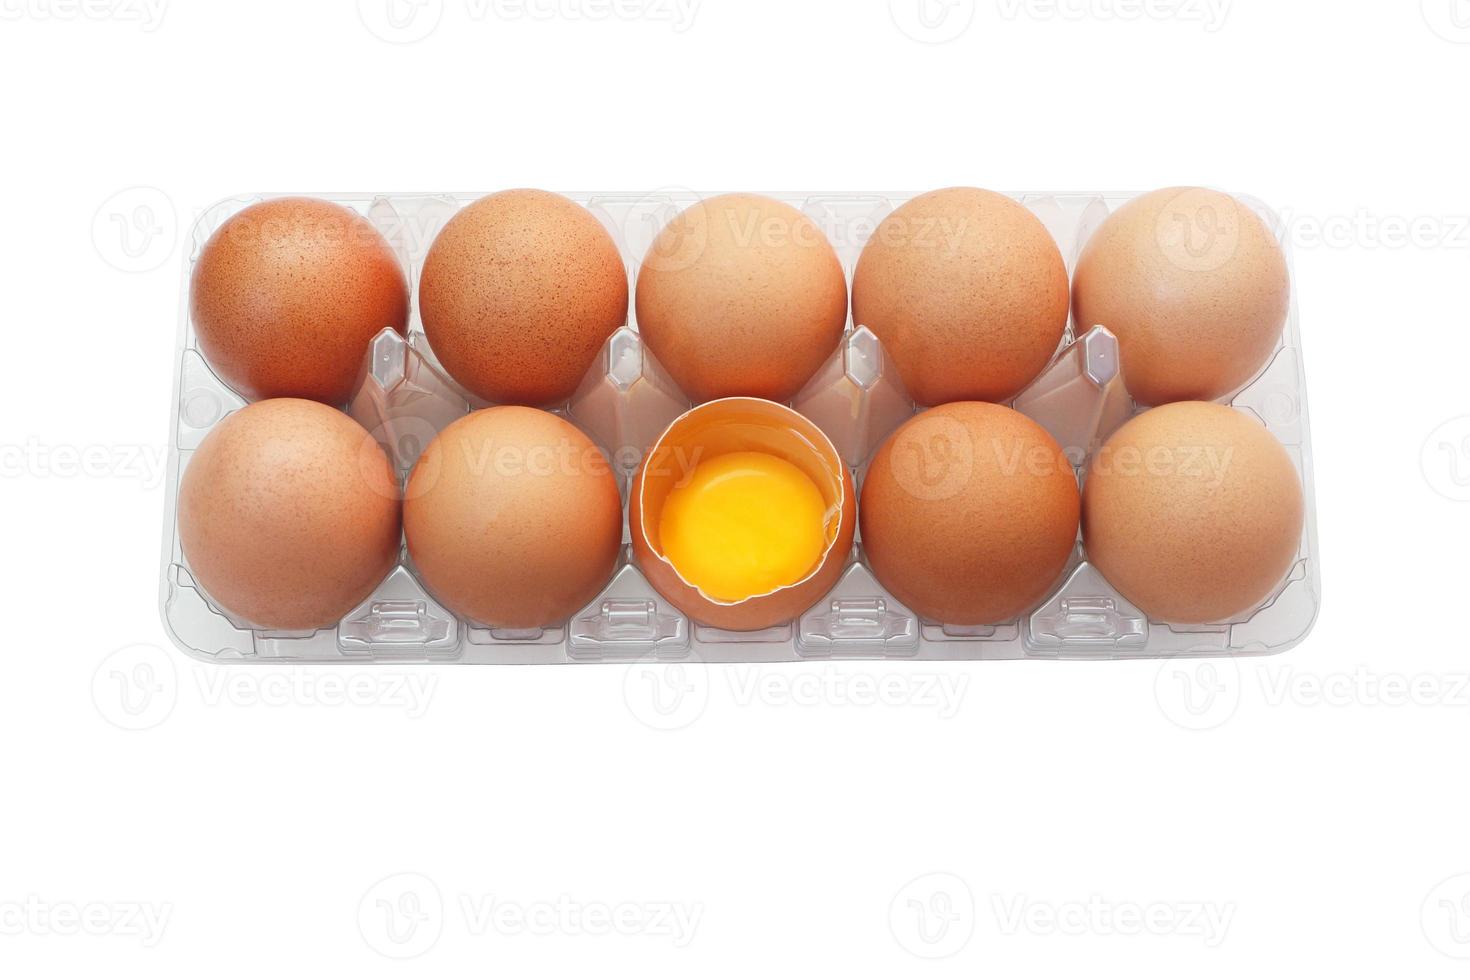 ovos de galinha em bandeja plástica isolada no fundo branco. um ovo foi aberto para revelar a gema fresca dentro. foto